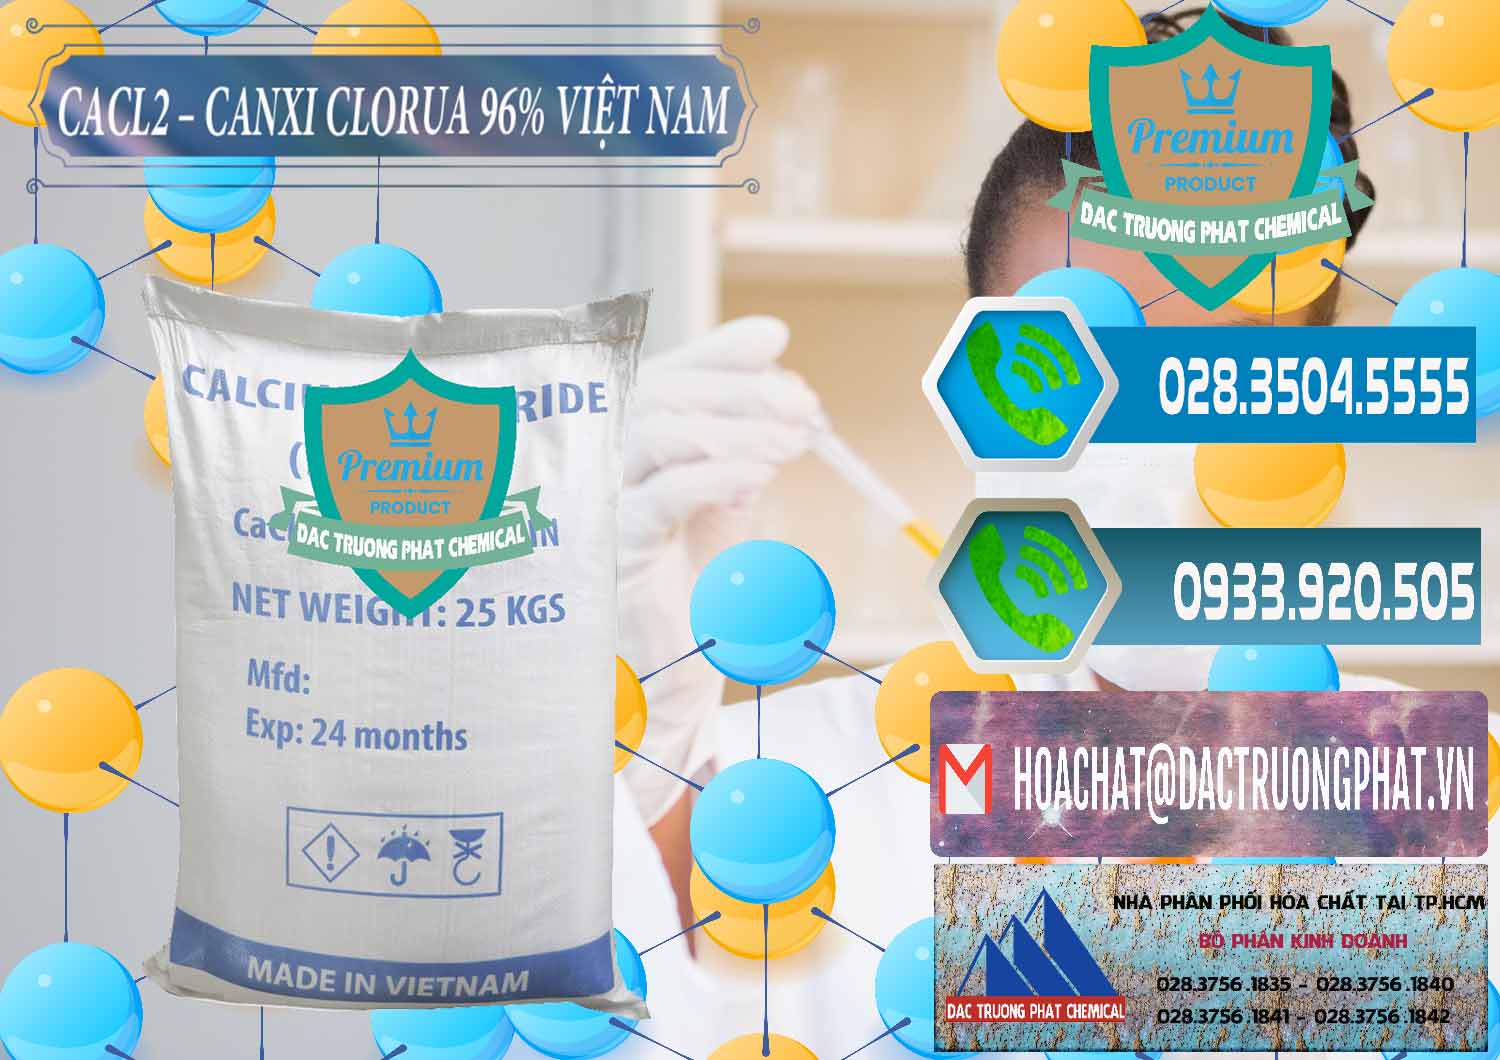 Nơi chuyên bán _ cung cấp CaCl2 – Canxi Clorua 96% Việt Nam - 0236 - Đơn vị kinh doanh và bán hóa chất tại TP.HCM - congtyhoachat.net